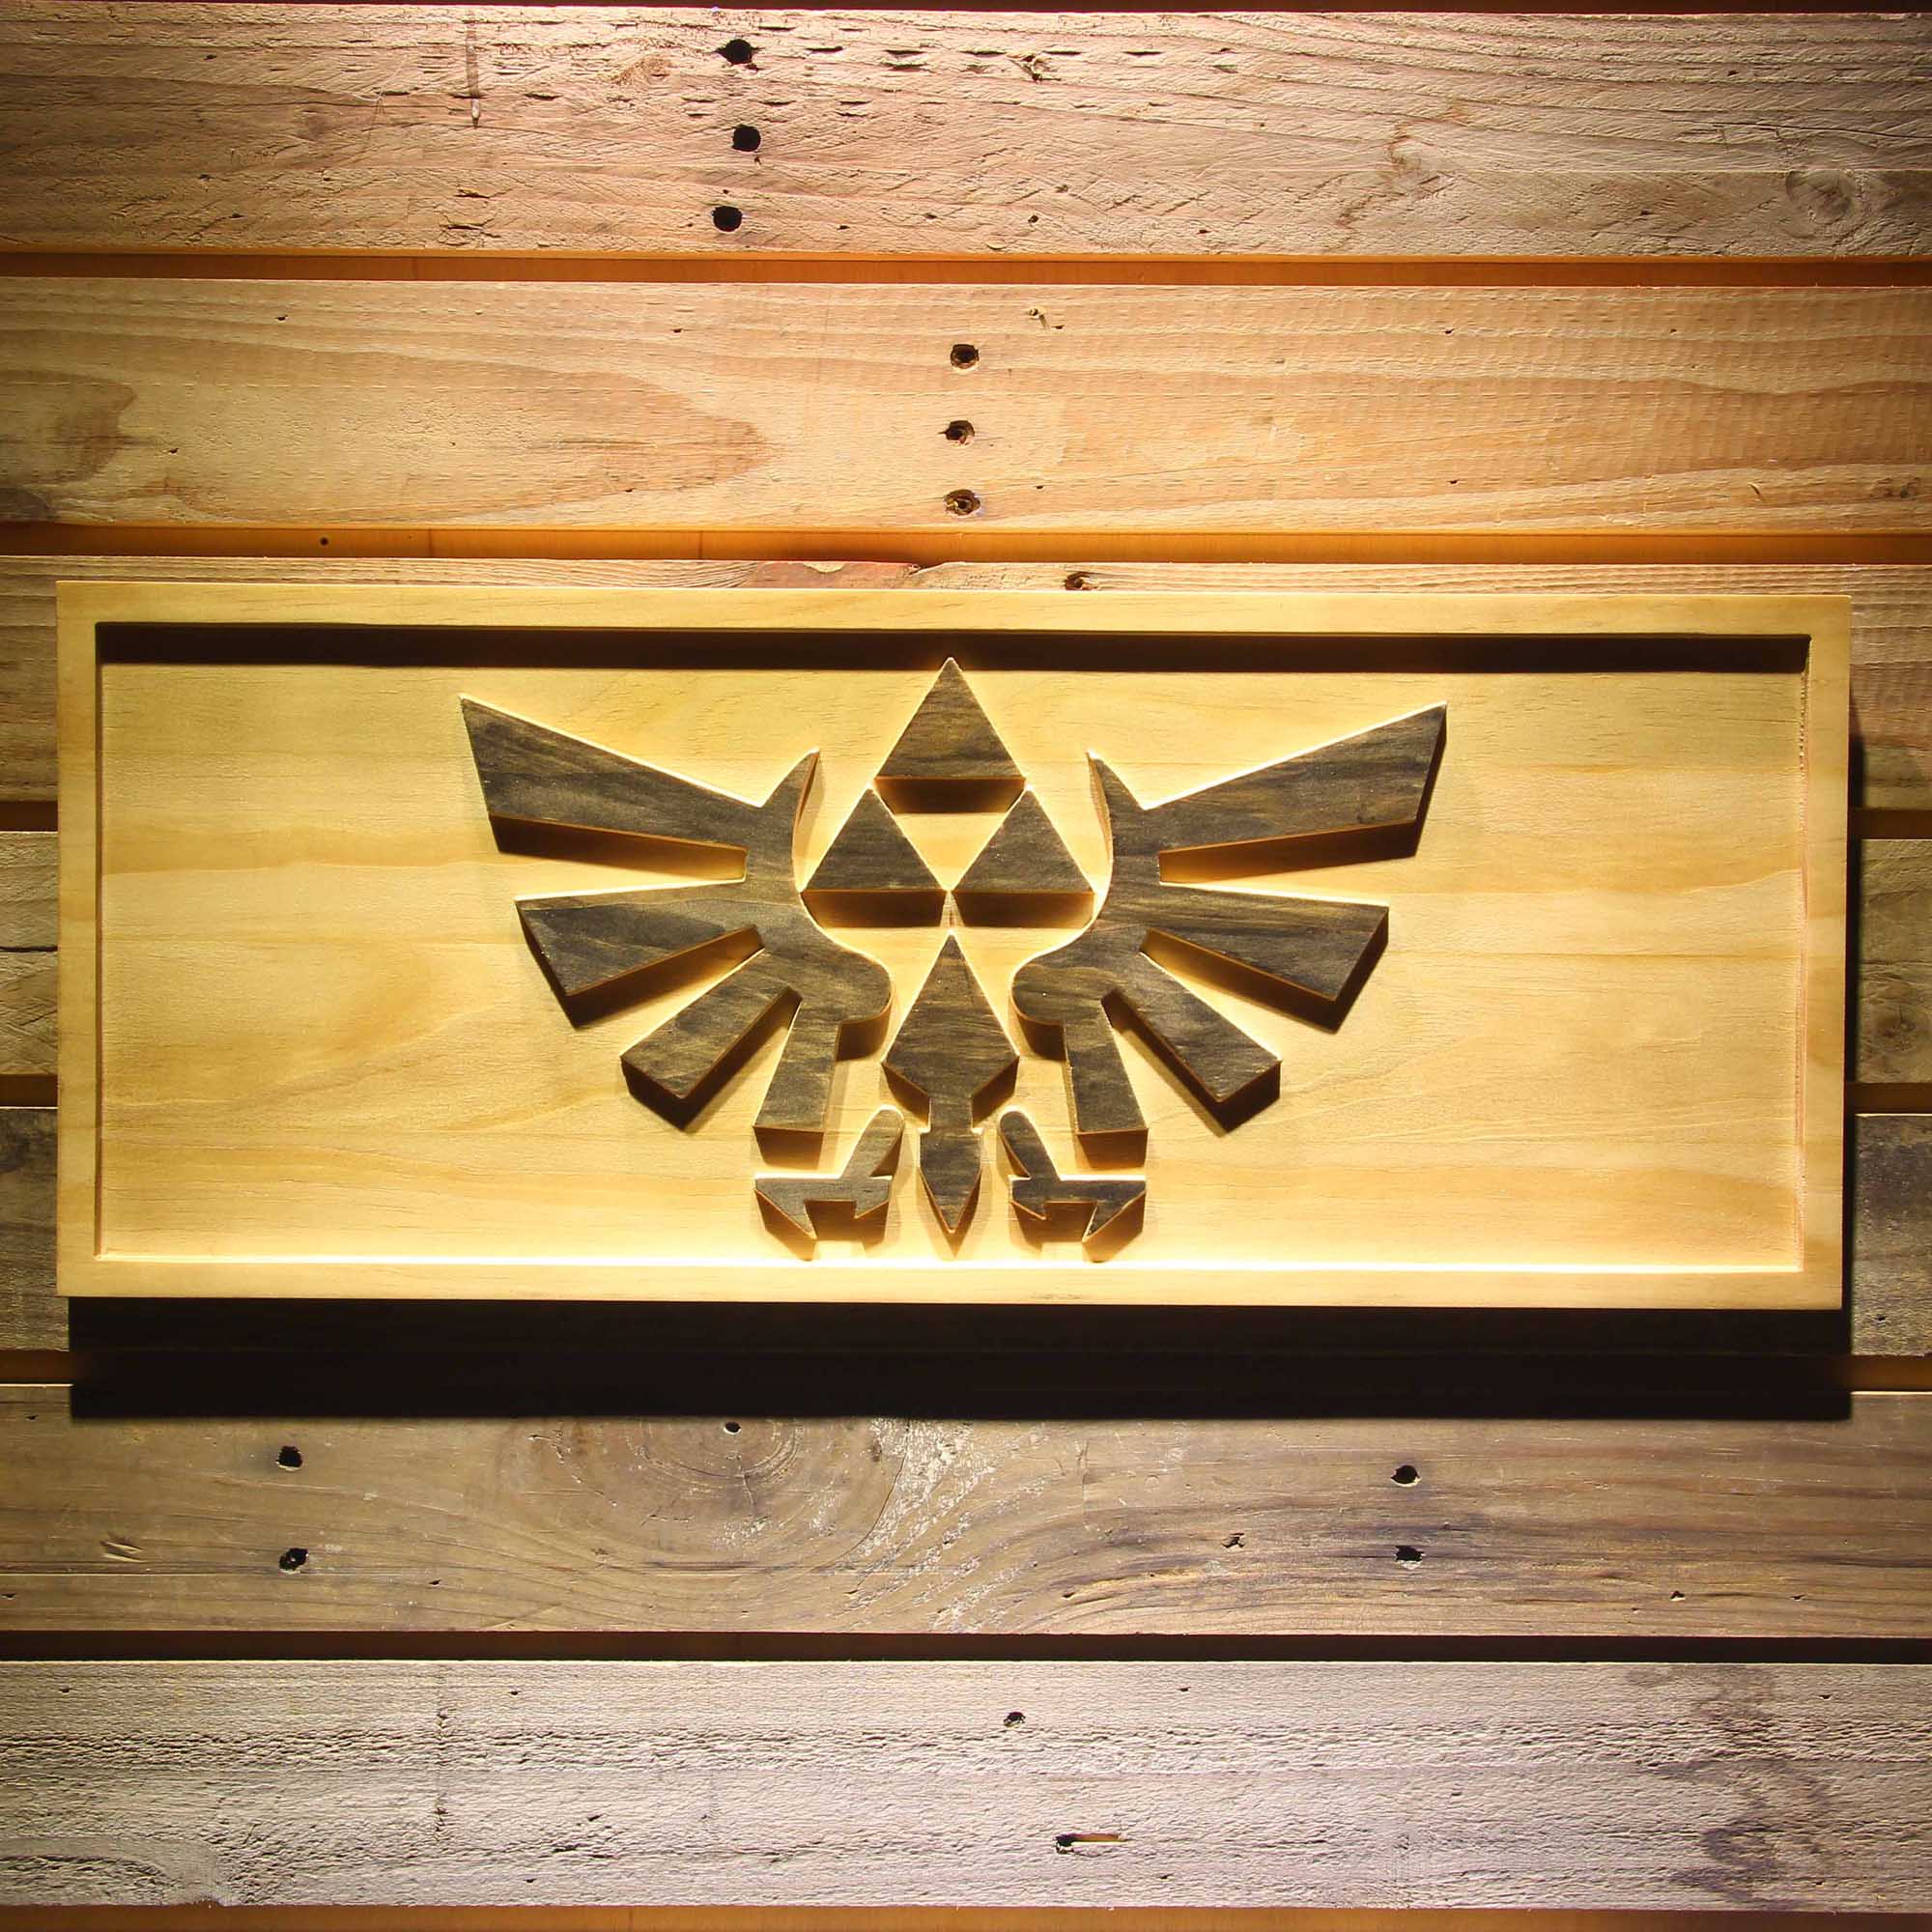 The Legend of Zelda Triforce Game 3D Wooden Engrave Sign